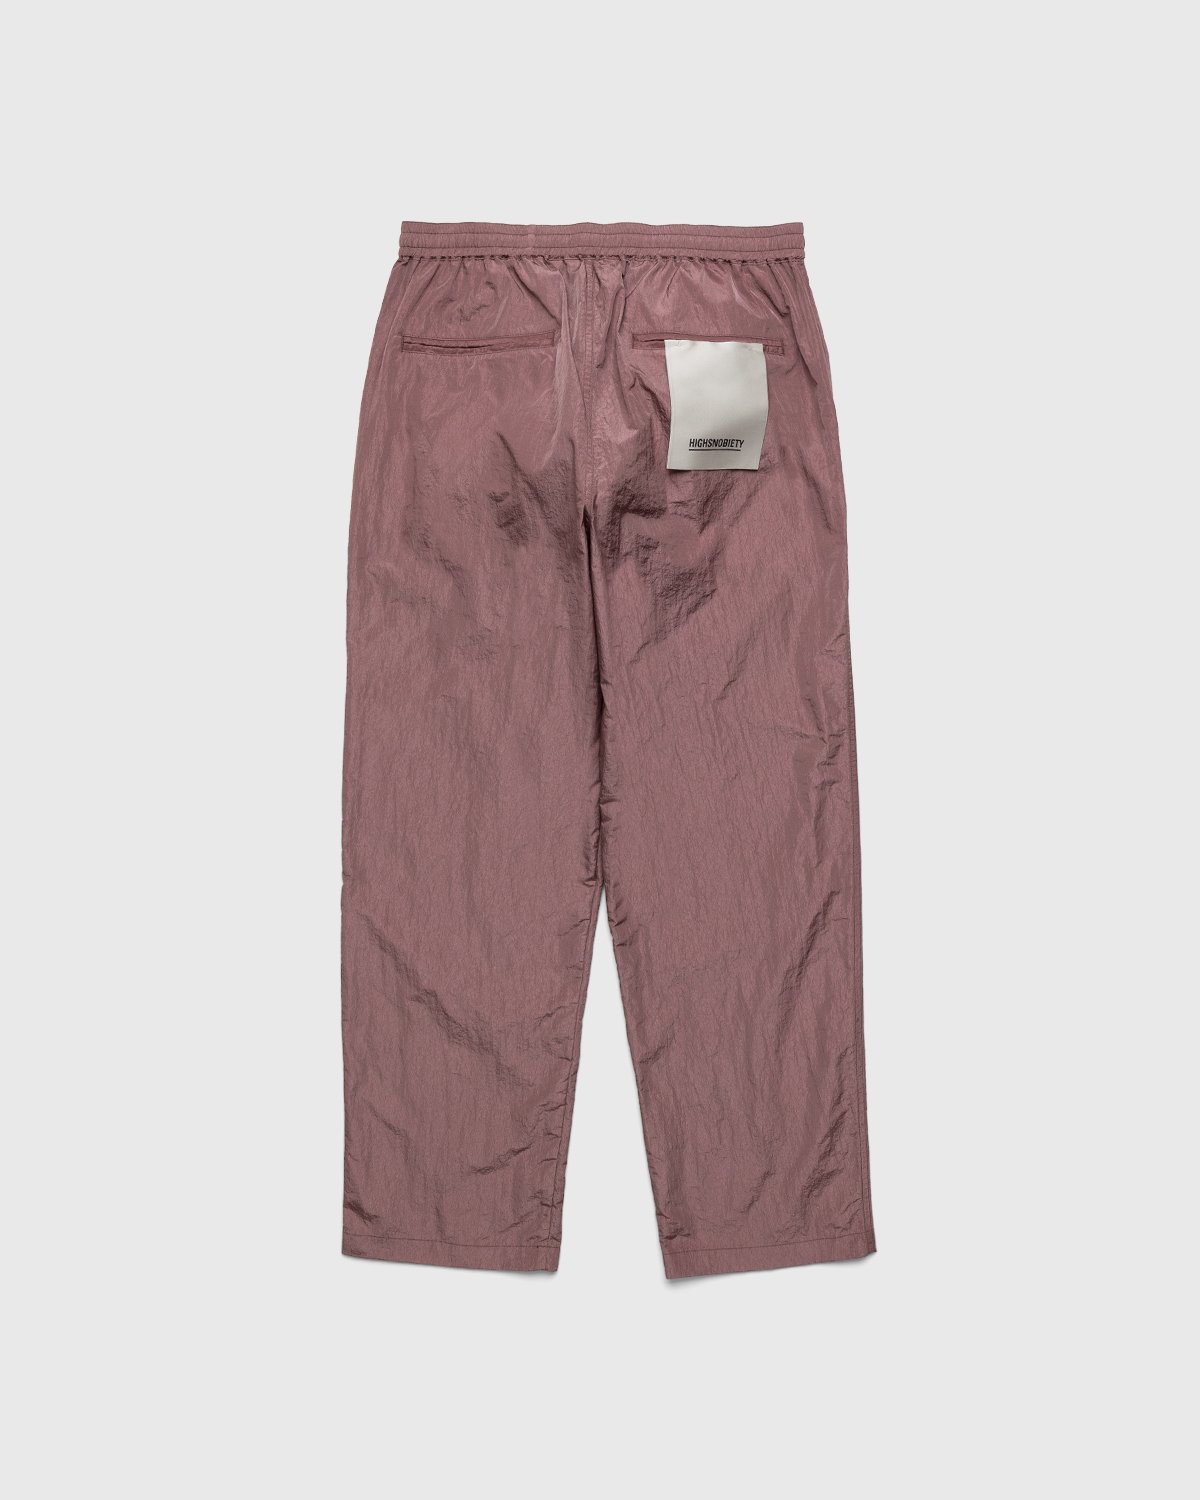 Highsnobiety - Crepe Nylon Elastic Pants Rose Gold - Clothing - Pink - Image 2